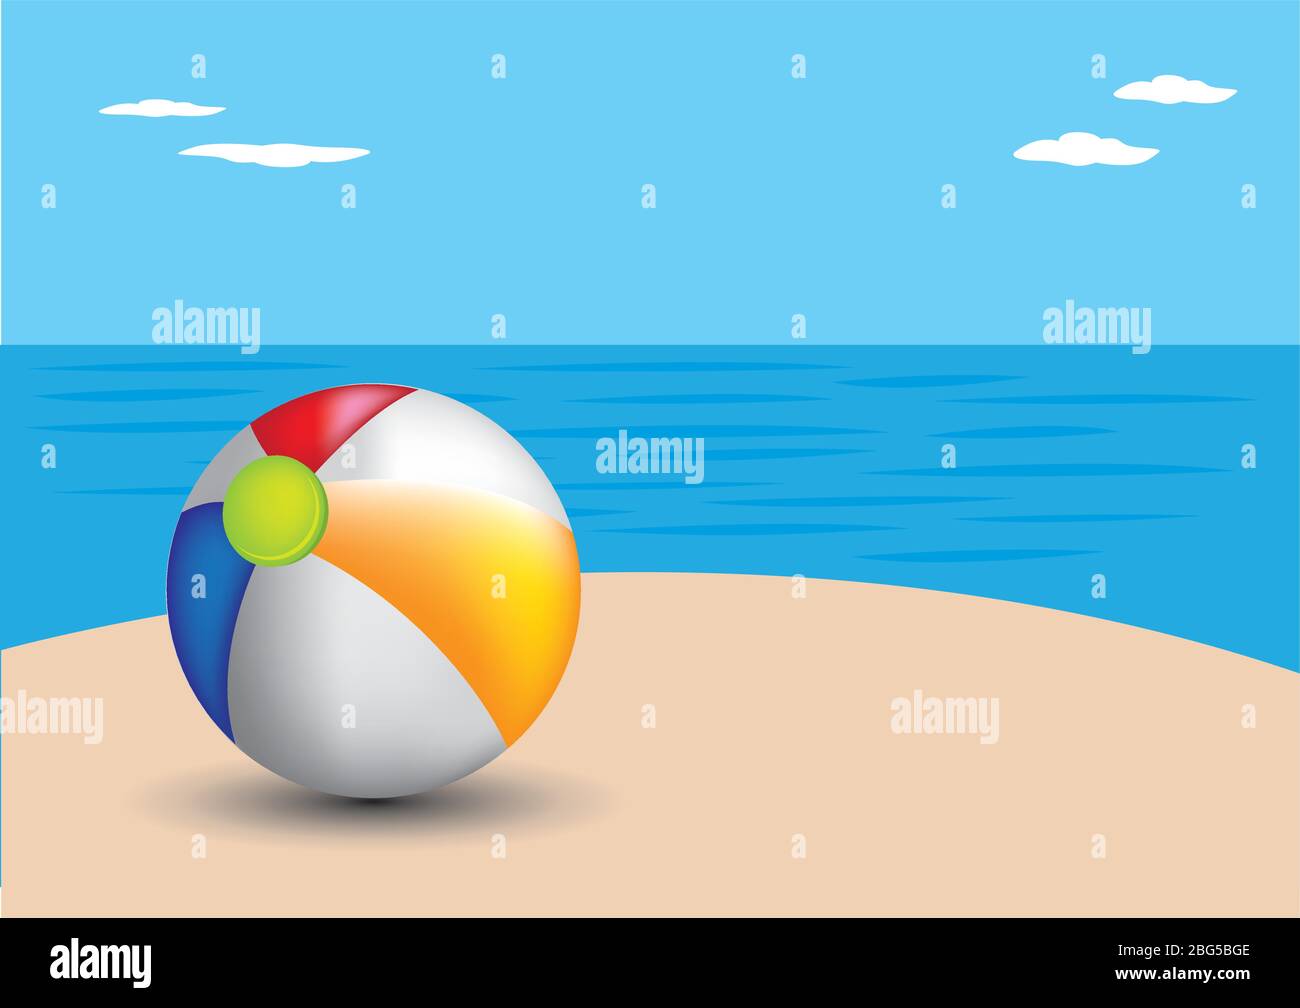 Vector illustration of a beach ball on a beach. Stock Vector